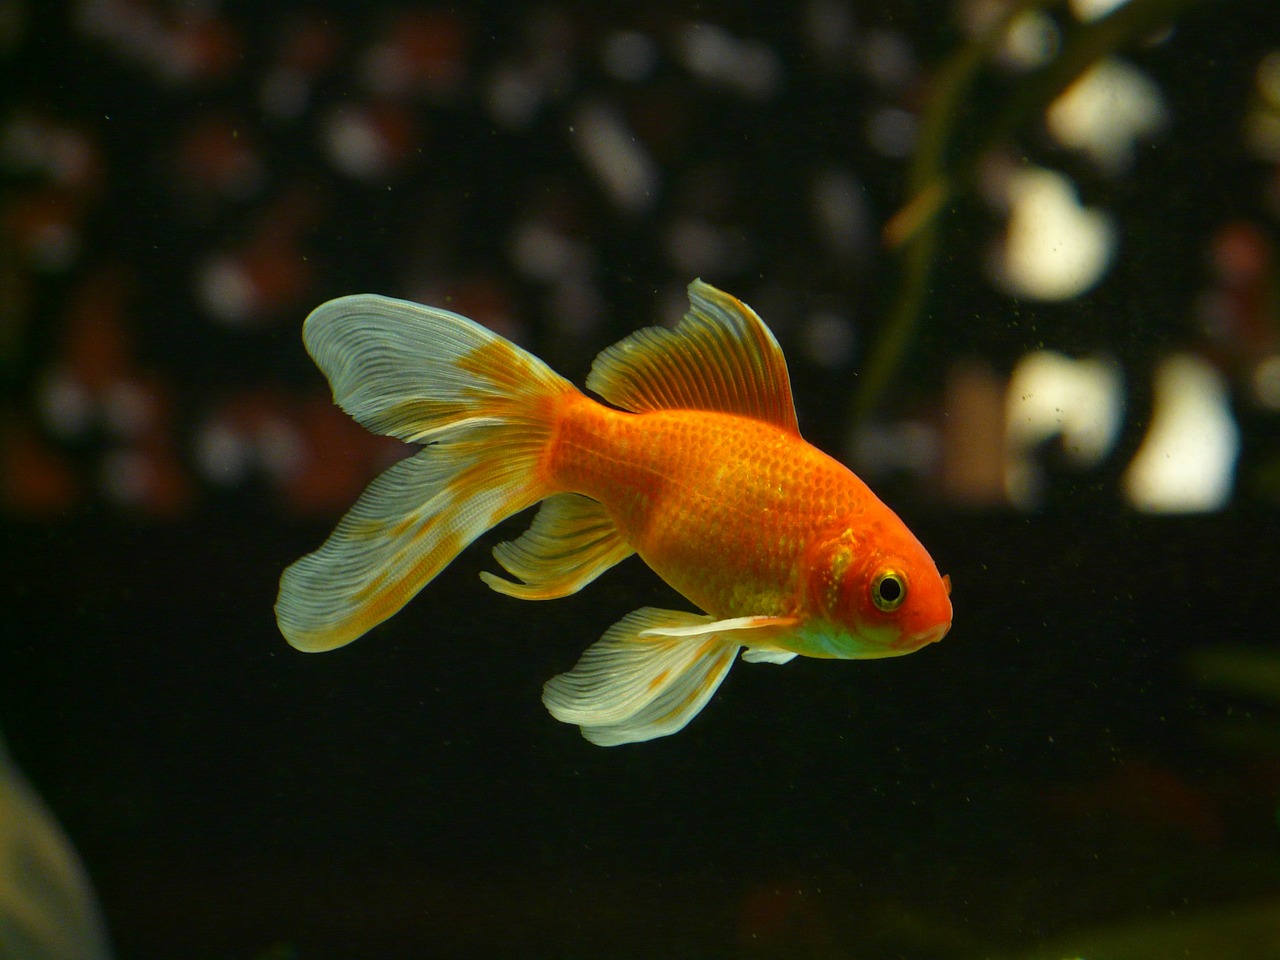 Les poissons rouges peuvent conduire sur terre, selon une étude israélienne